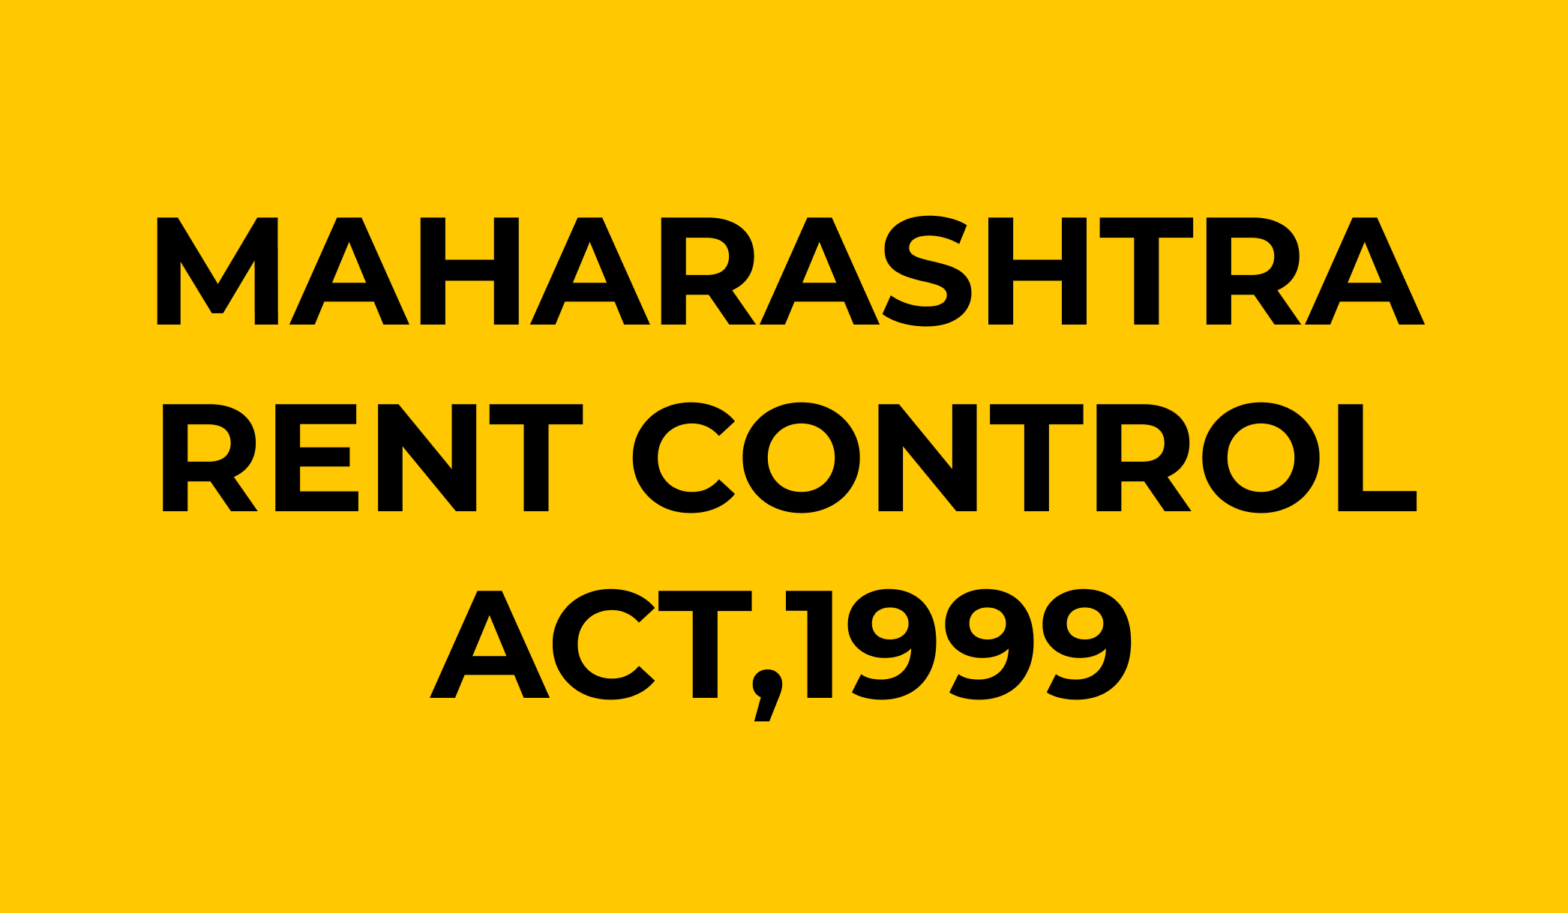 MAHARASHTRA RENT CONTROL ACT